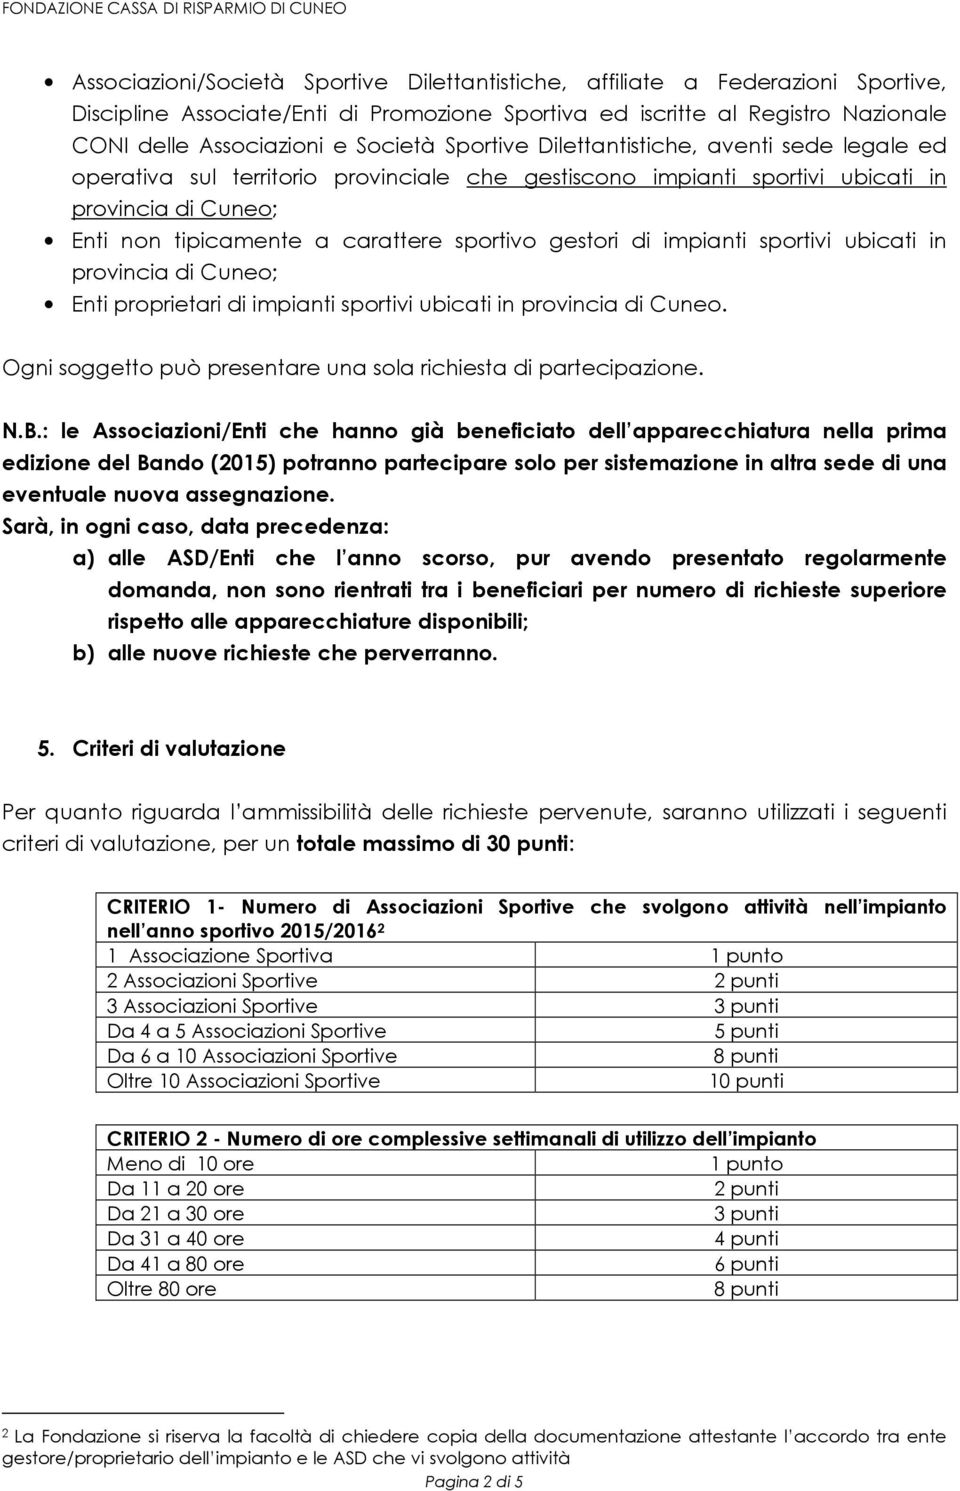 di impianti sportivi ubicati in provincia di Cuneo; Enti proprietari di impianti sportivi ubicati in provincia di Cuneo. Ogni soggetto può presentare una sola richiesta di partecipazione. N.B.